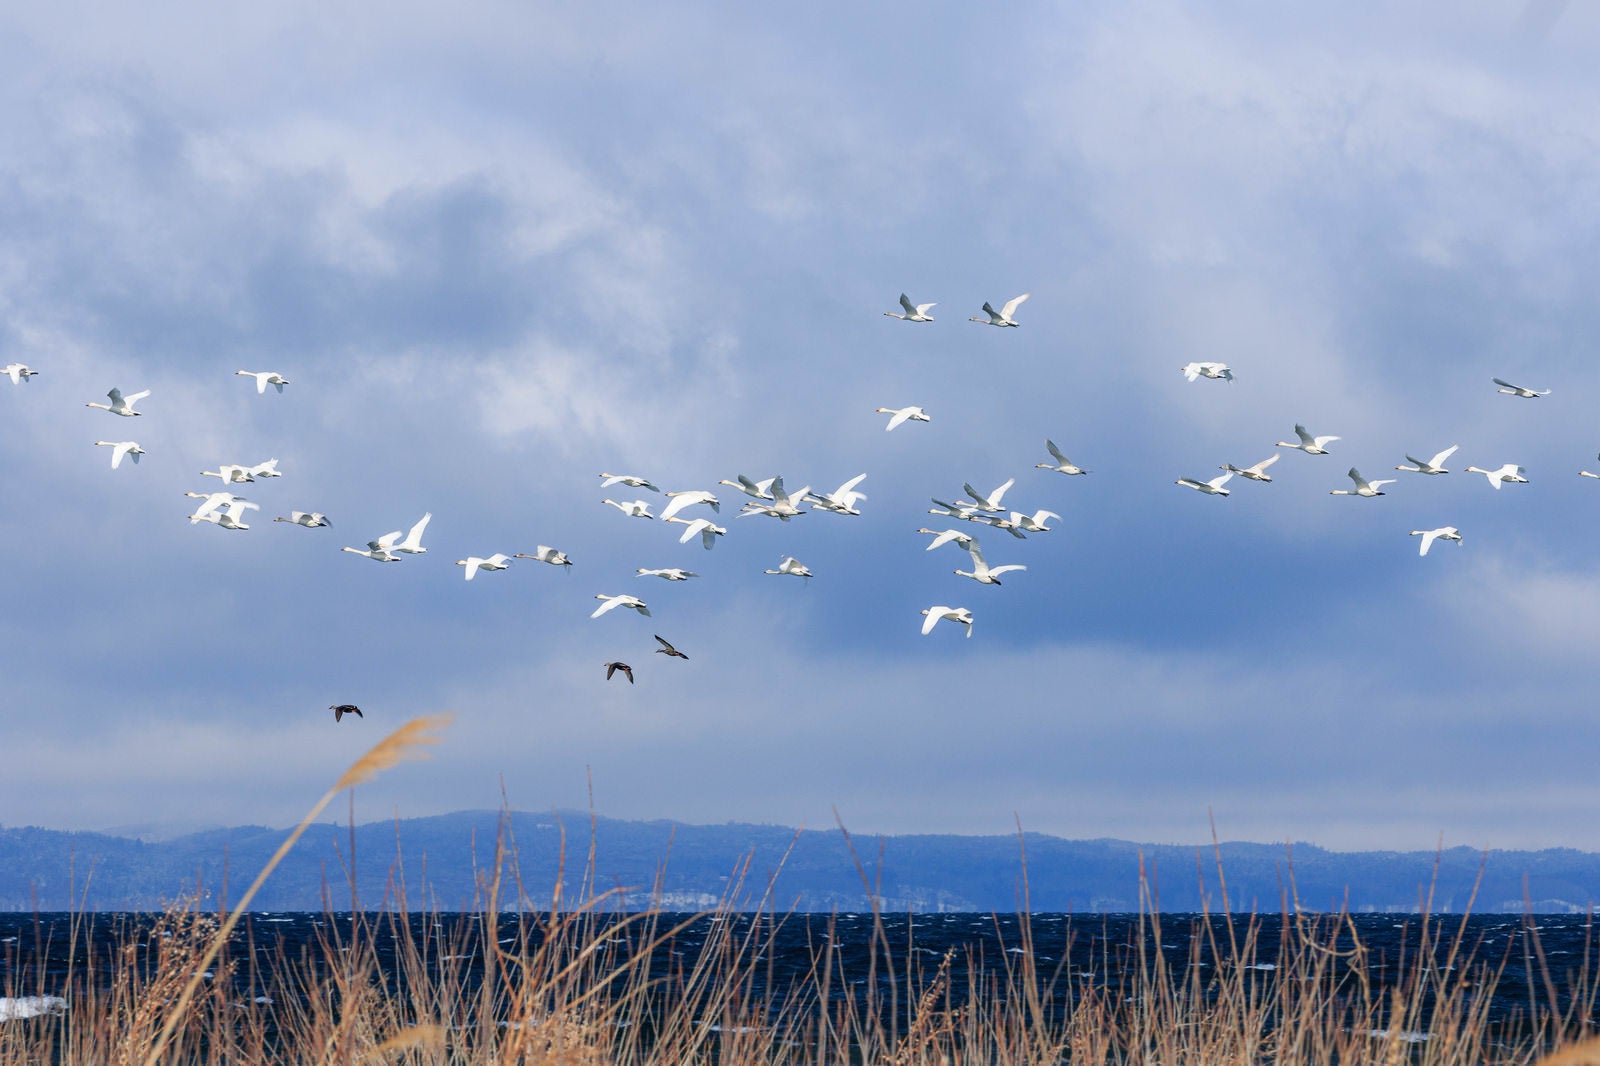 「白鳥の飛翔:による美しい空の舞台」の写真